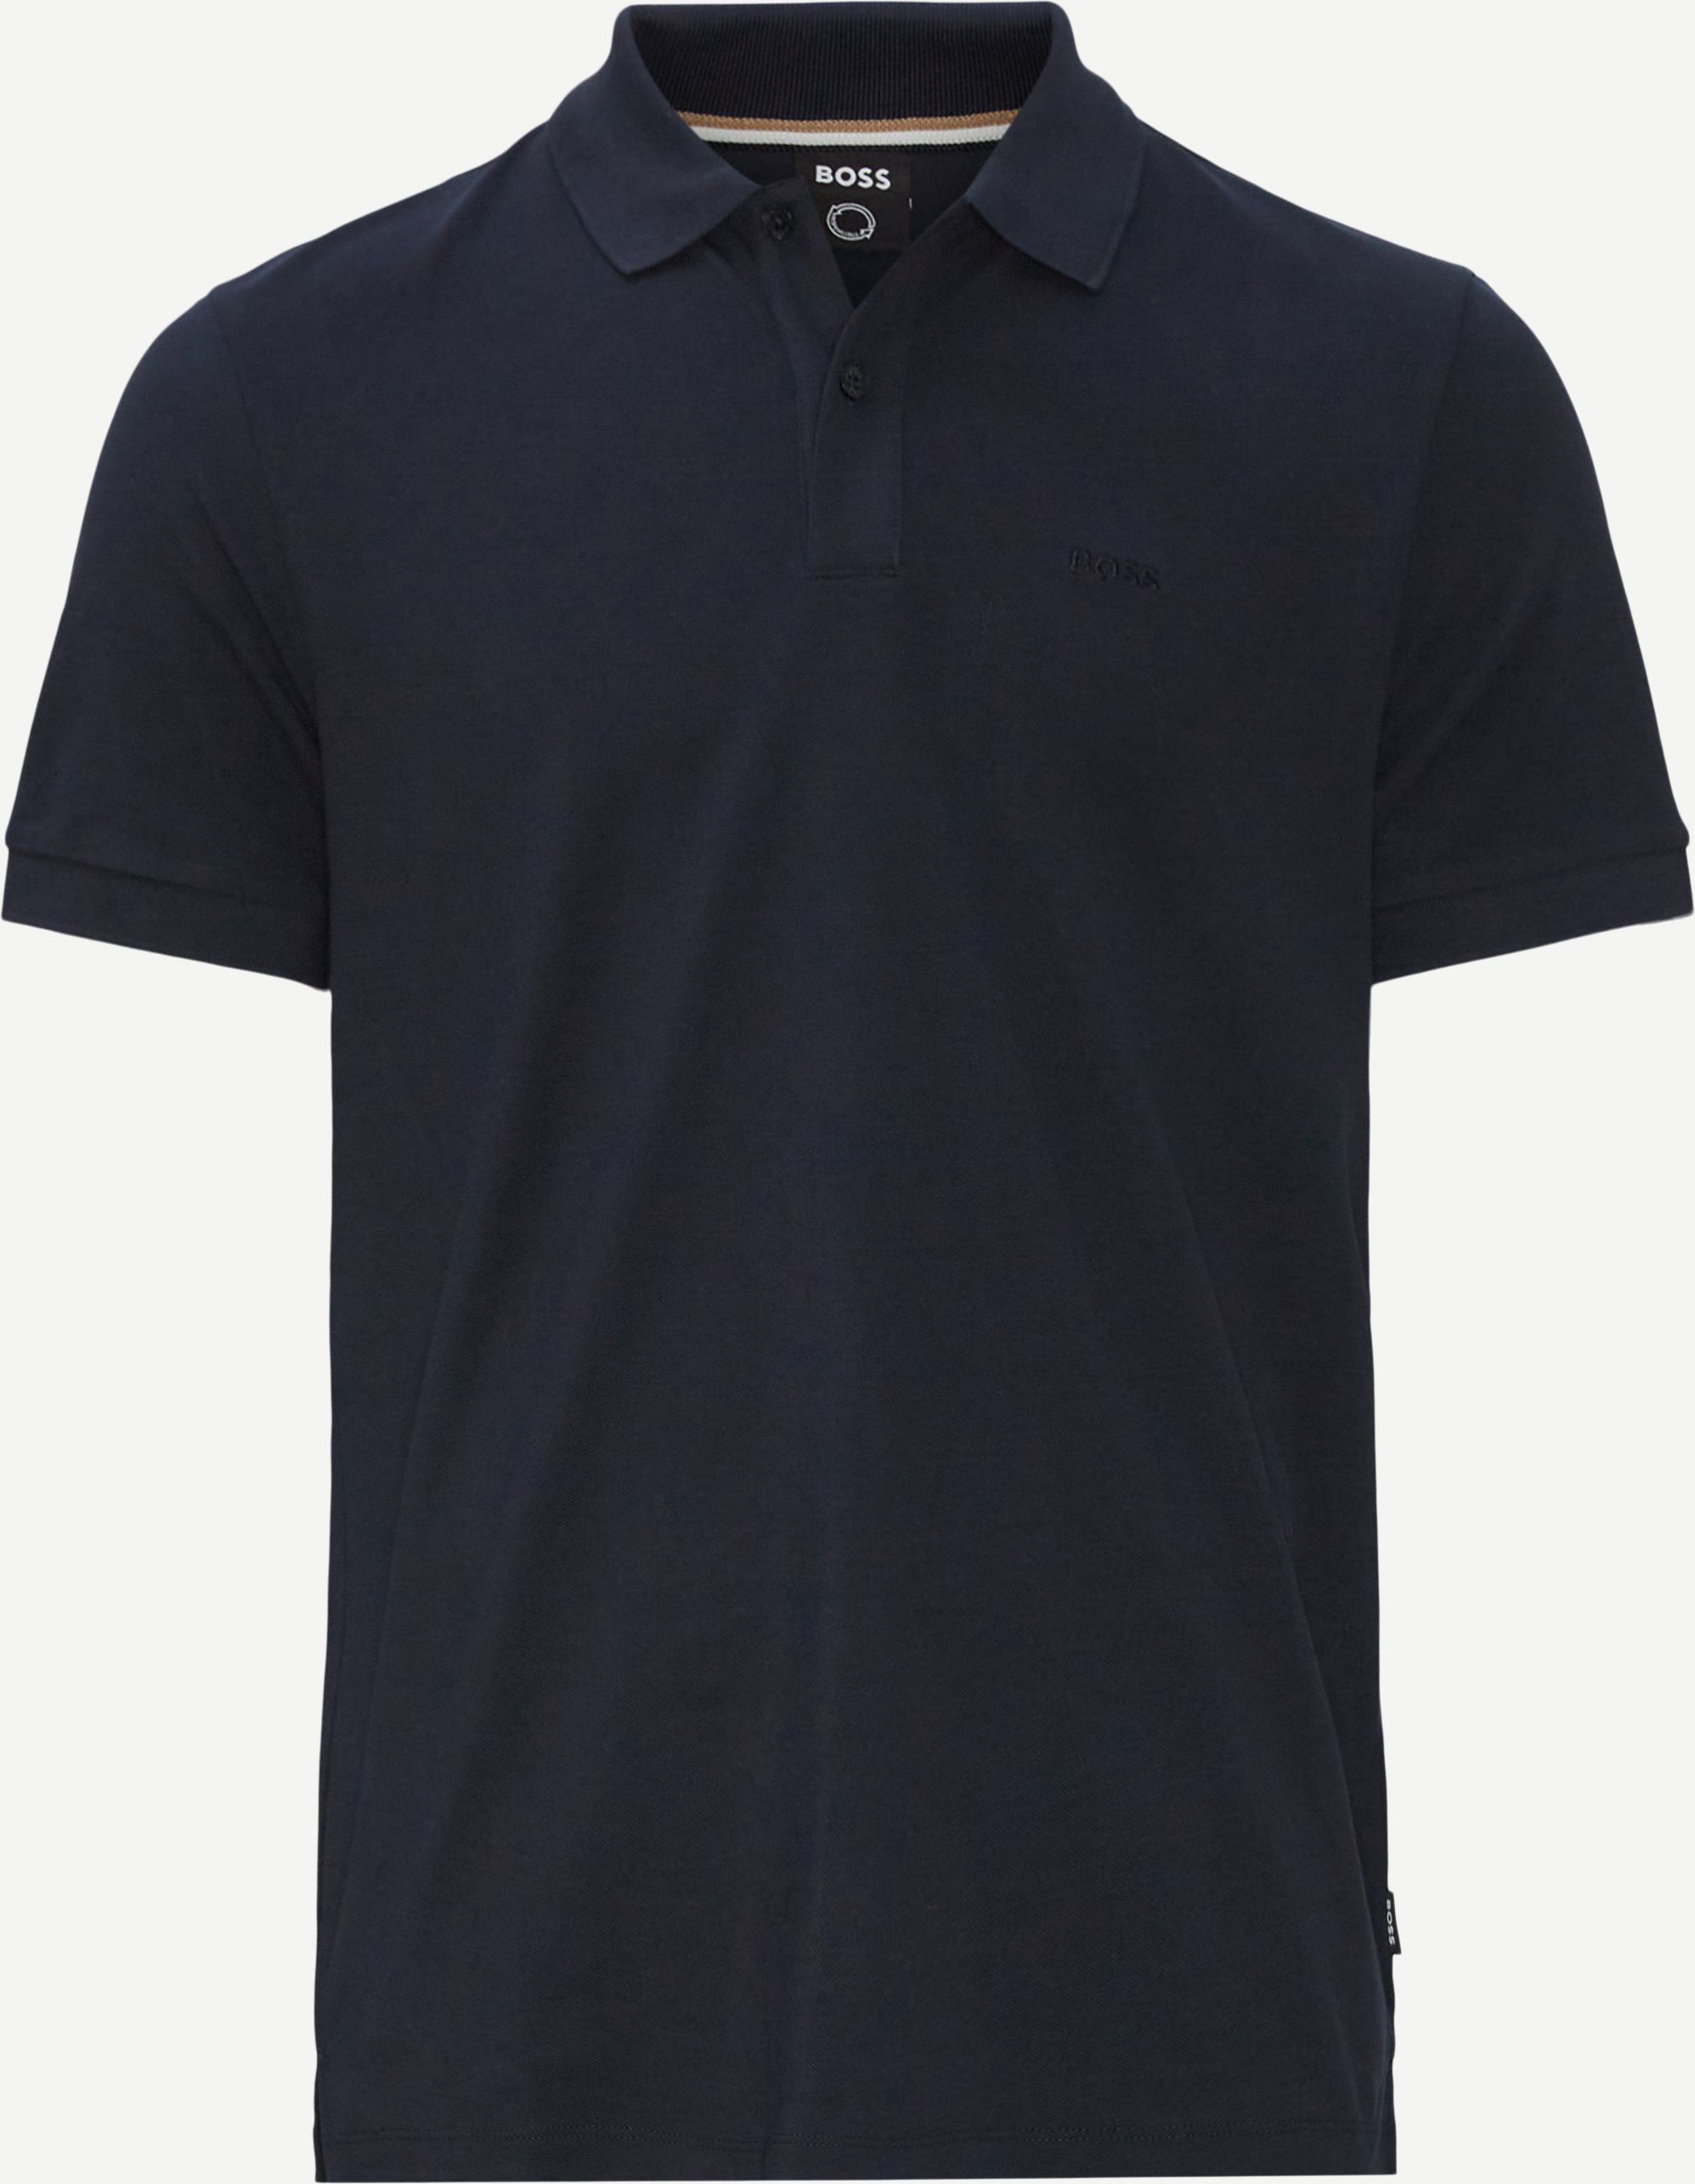 Pallas Polo T-shirt - T-shirts - Regular fit - Blå